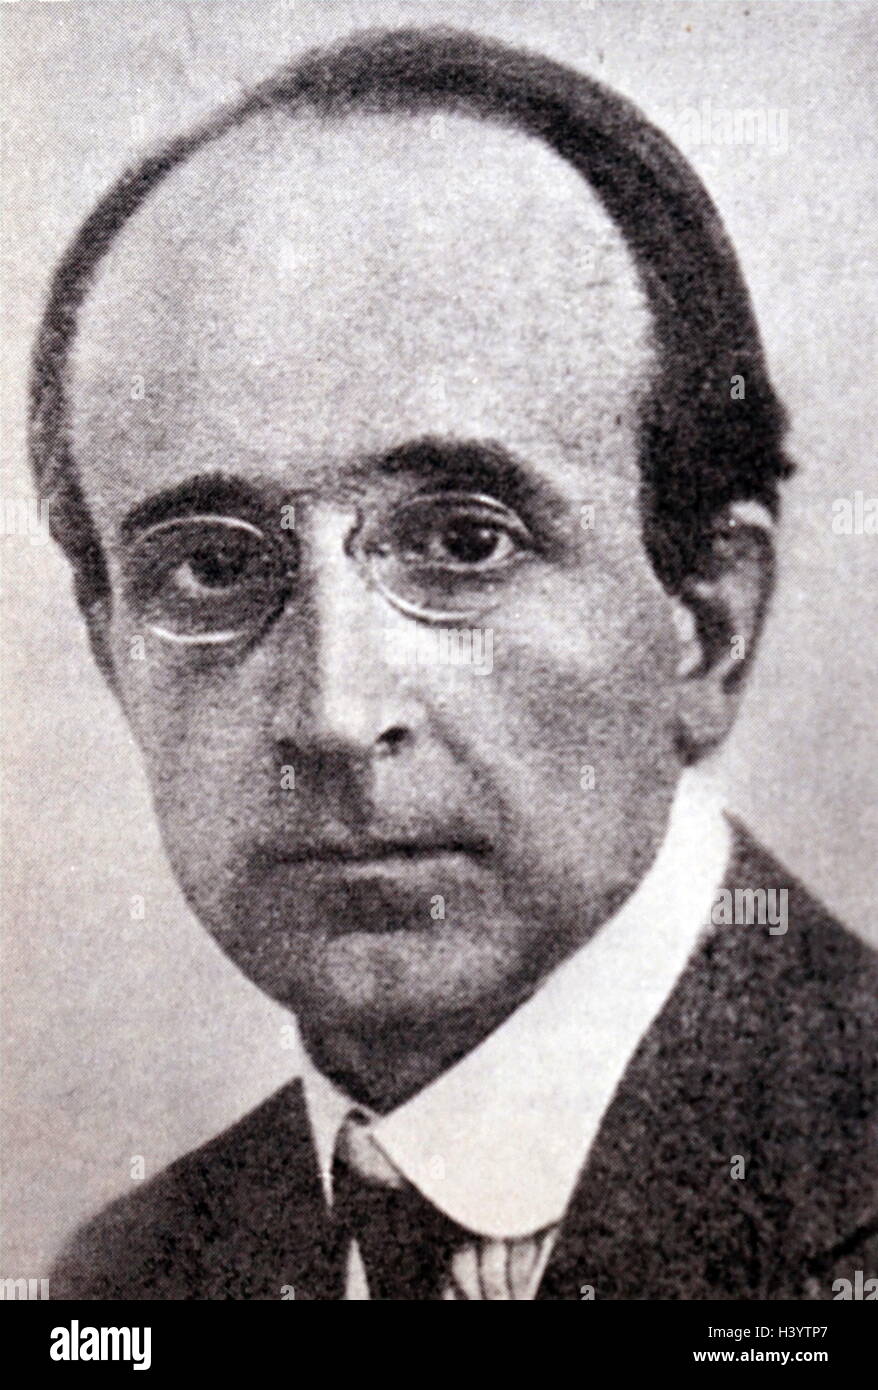 Fotografieren von Salvador de Madariaga (1886-1978), spanischer Diplomat, Schriftsteller, Historiker und Pazifist. Vom 20. Jahrhundert Stockfoto